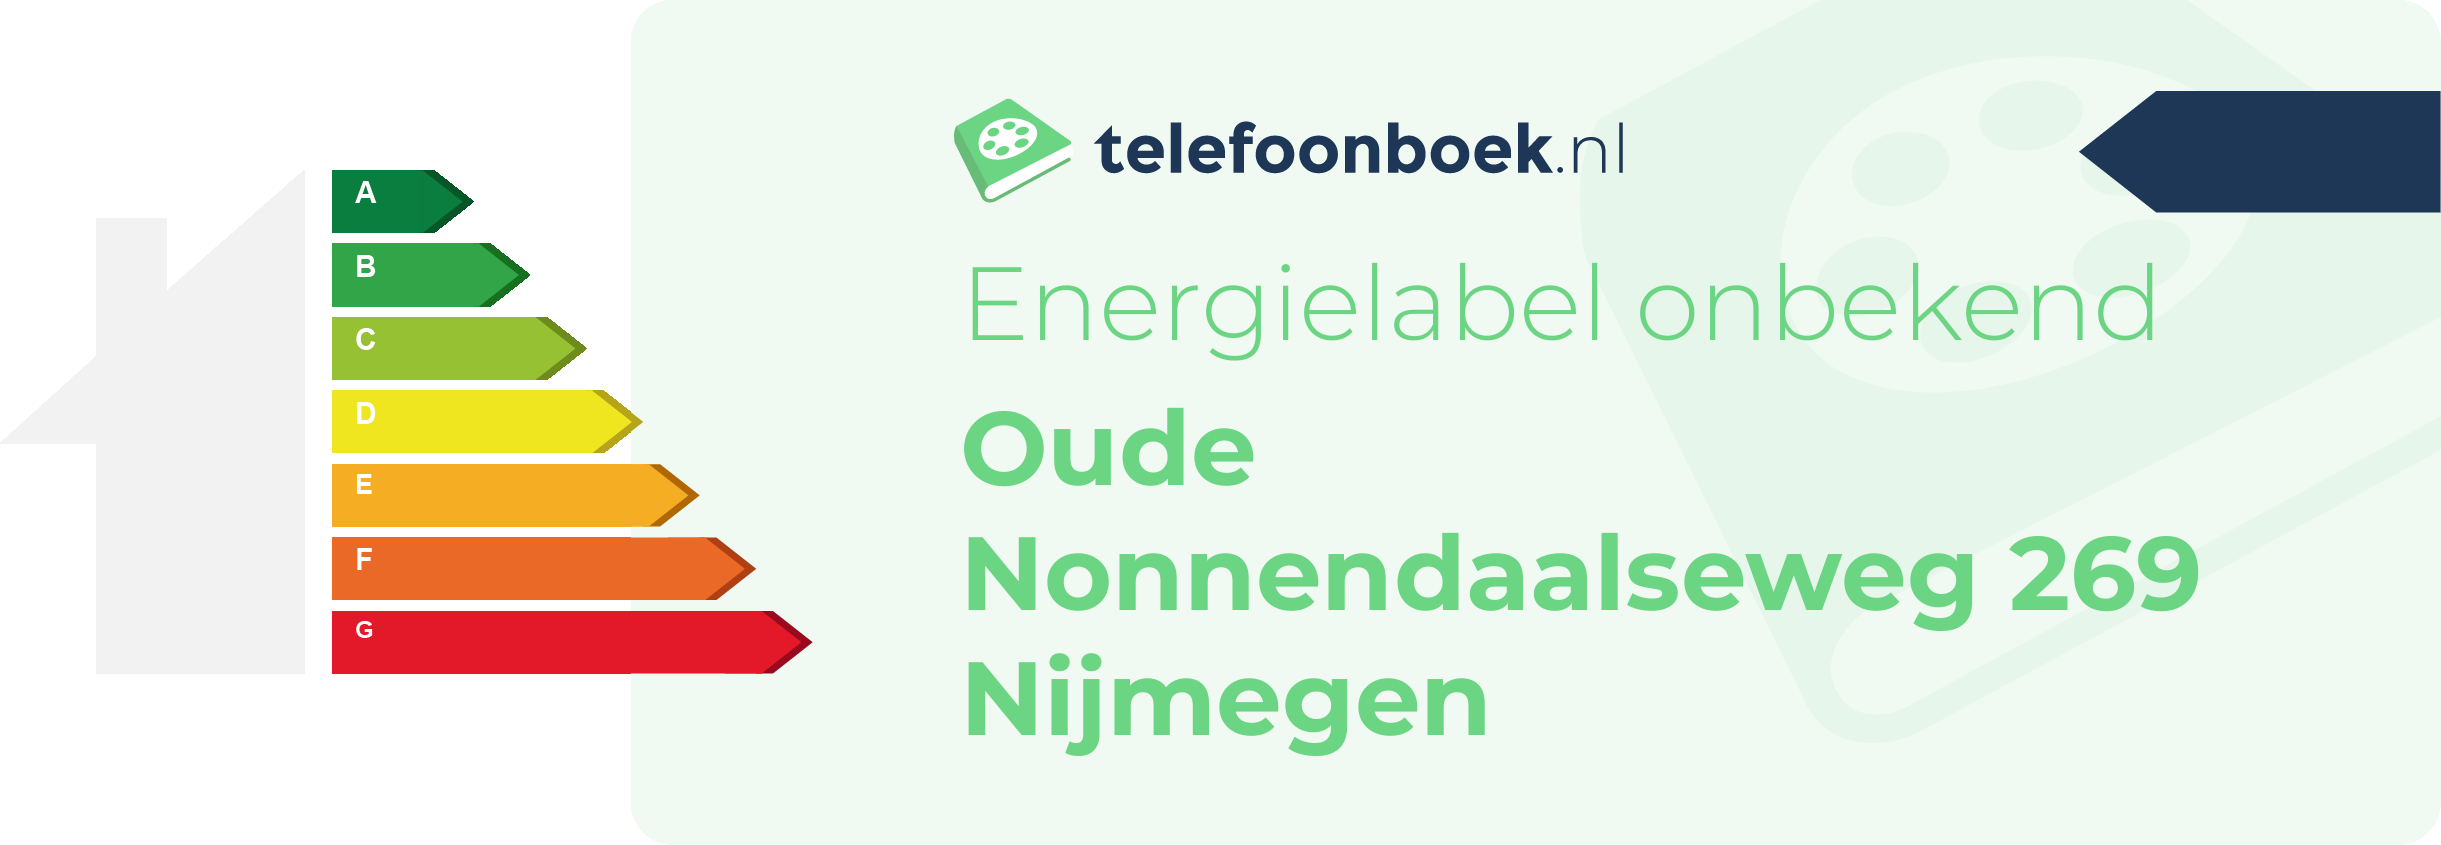 Energielabel Oude Nonnendaalseweg 269 Nijmegen